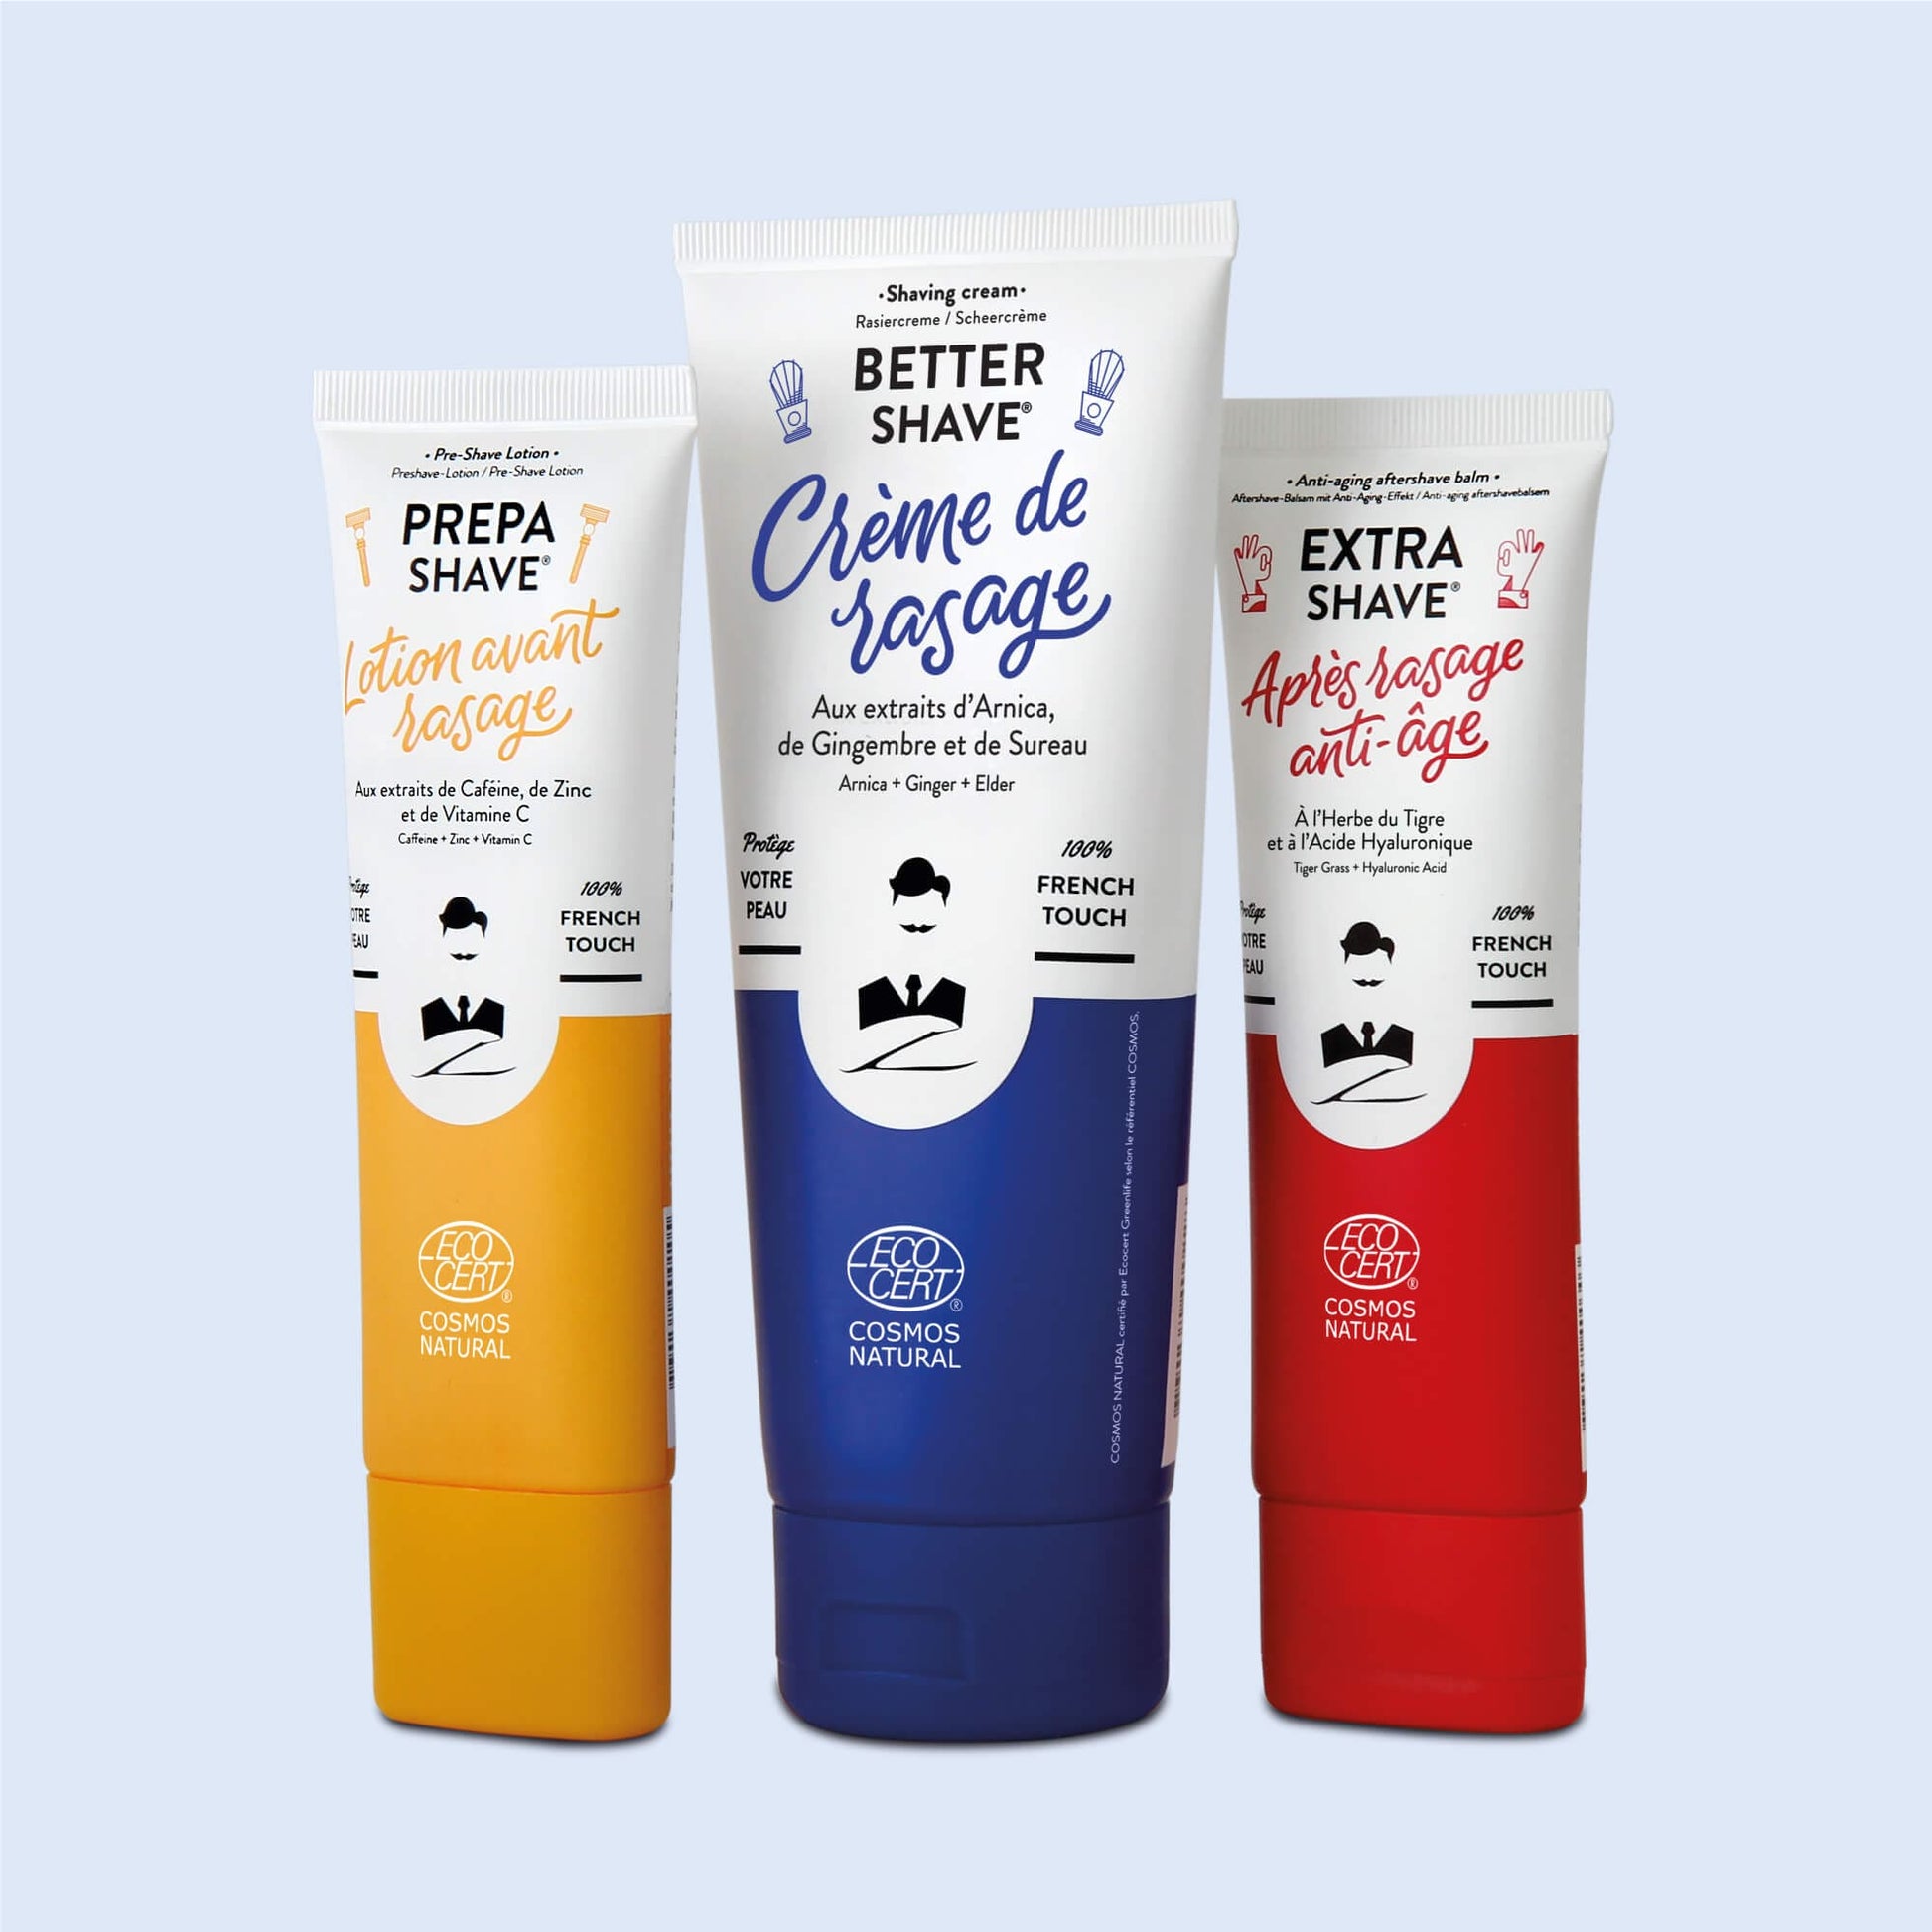 Gamme de soins de rasage de Monsieur BARBIER incluant une crème à raser, une lotion avant-rasage et un après-rasage anti-âge, emballés dans des tubes colorés en jaune, bleu et rouge.